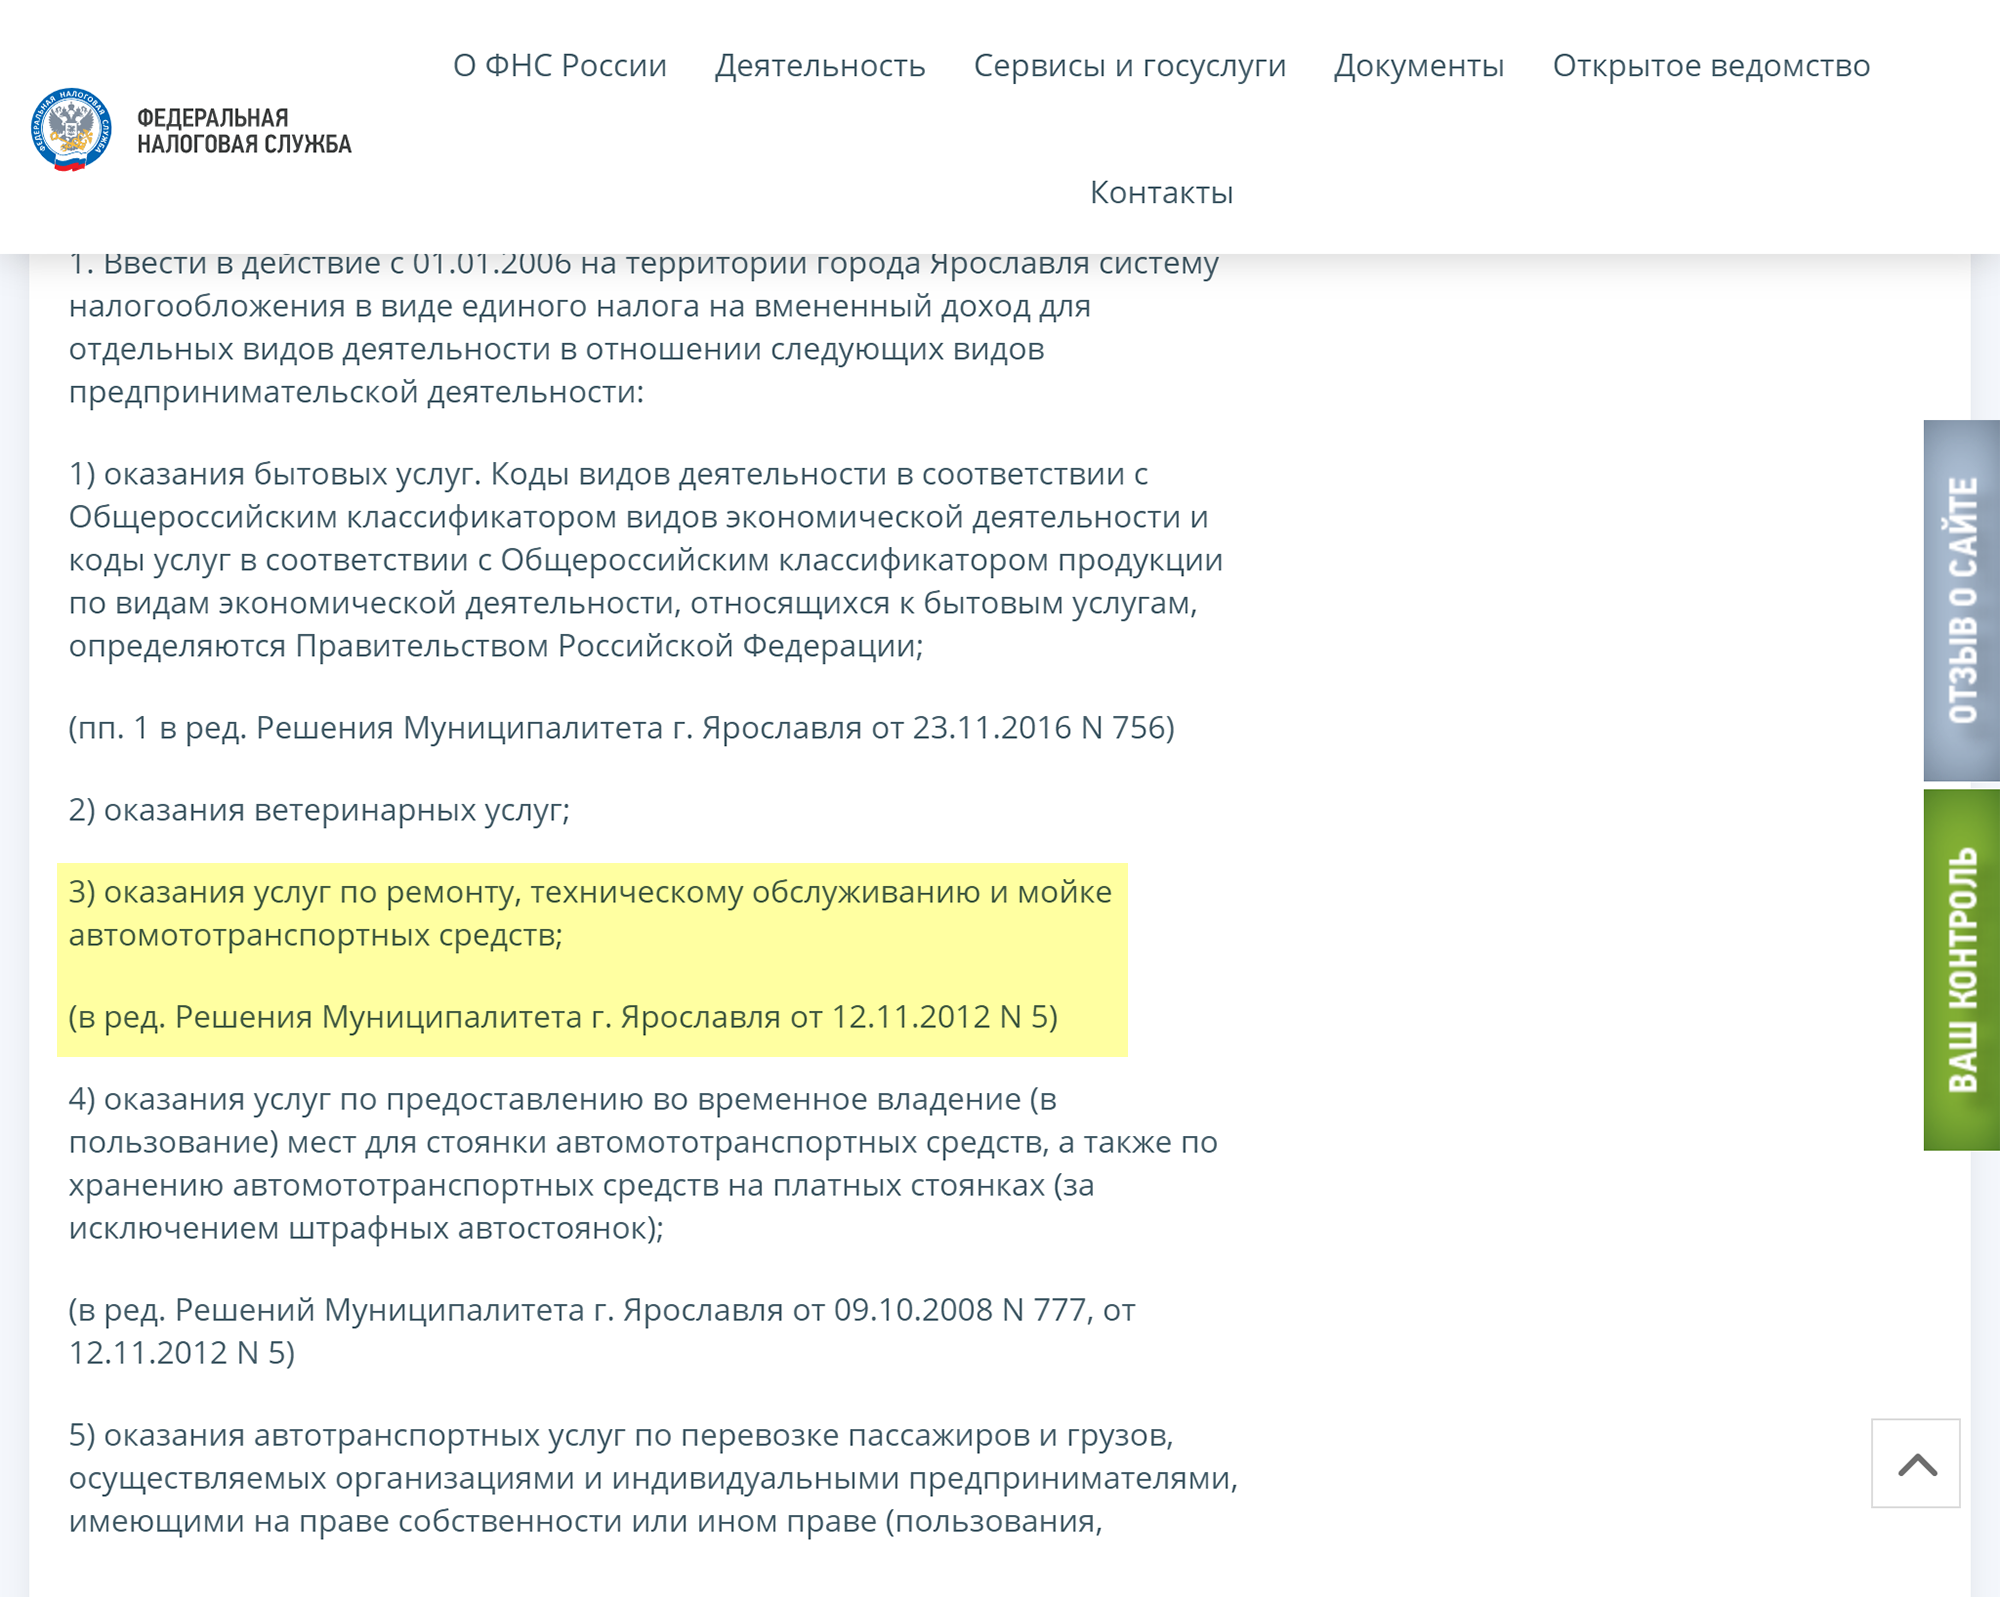 В решении муниципалитета Ярославля услуга включена в список, значит, автомойка в Ярославле может перейти на ЕНВД